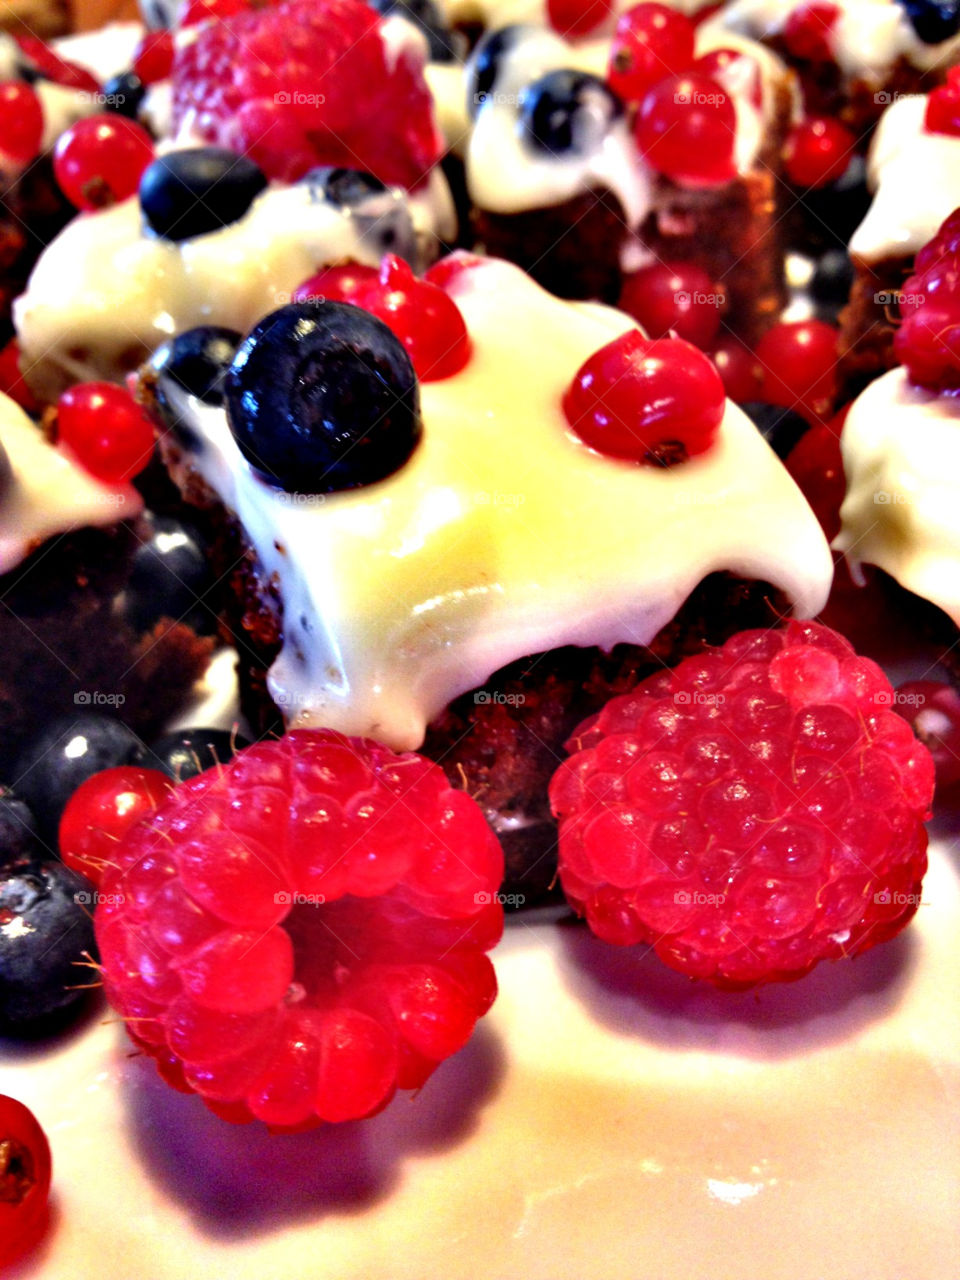 love berries yummy kake by marthe72